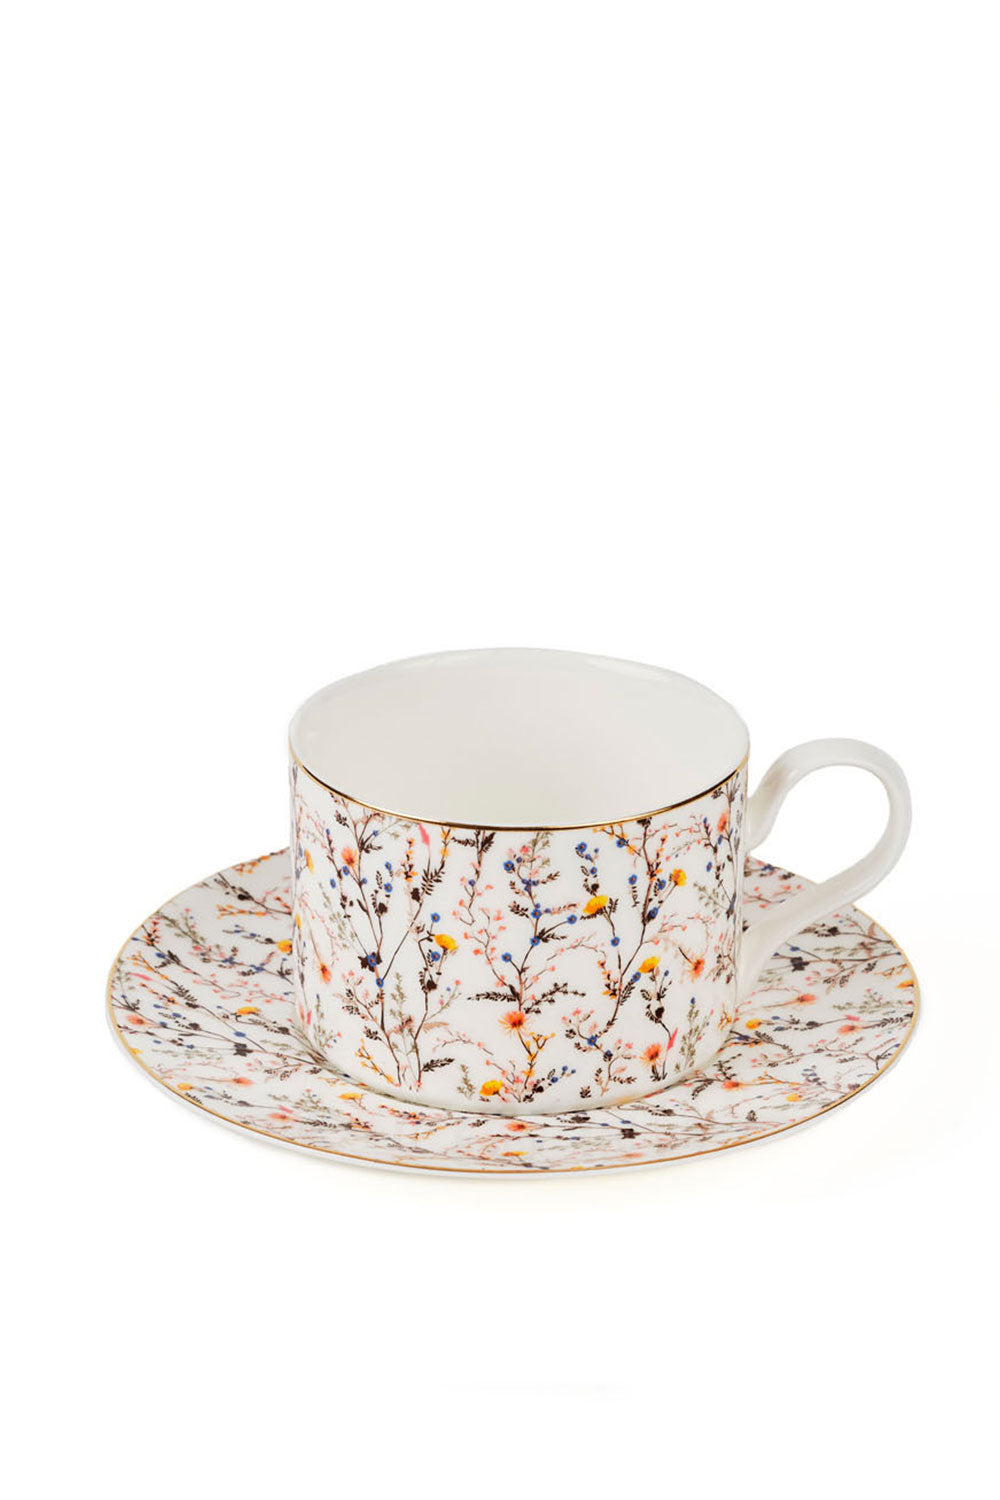 Botanical Tea Cups with Saucer, Set of 6